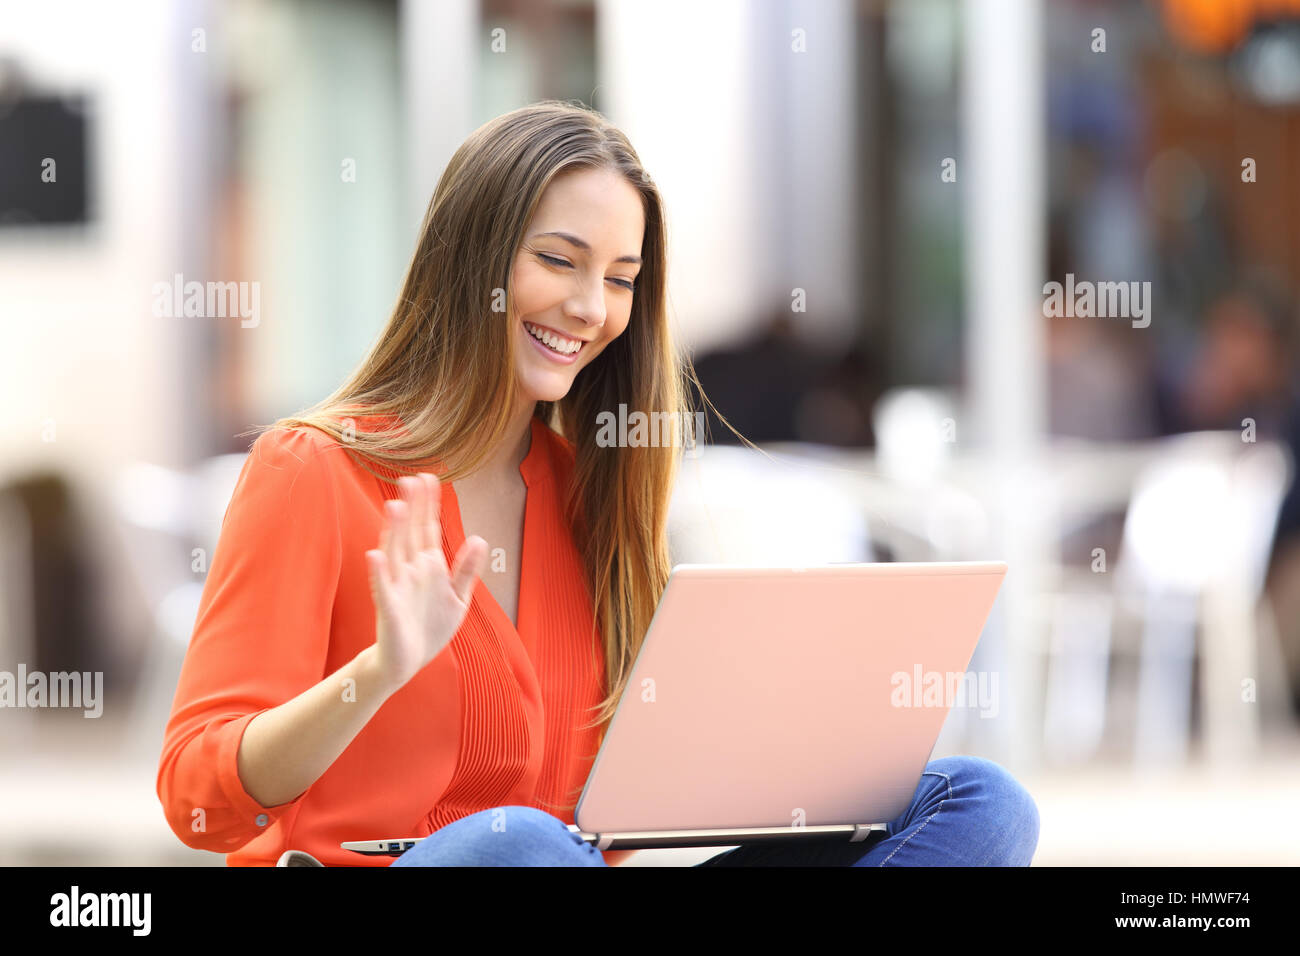 Glückliche Frau am Linie in einer Videokonferenz mit einem Laptop sitzen auf einer Bank in der Straße Stockfoto